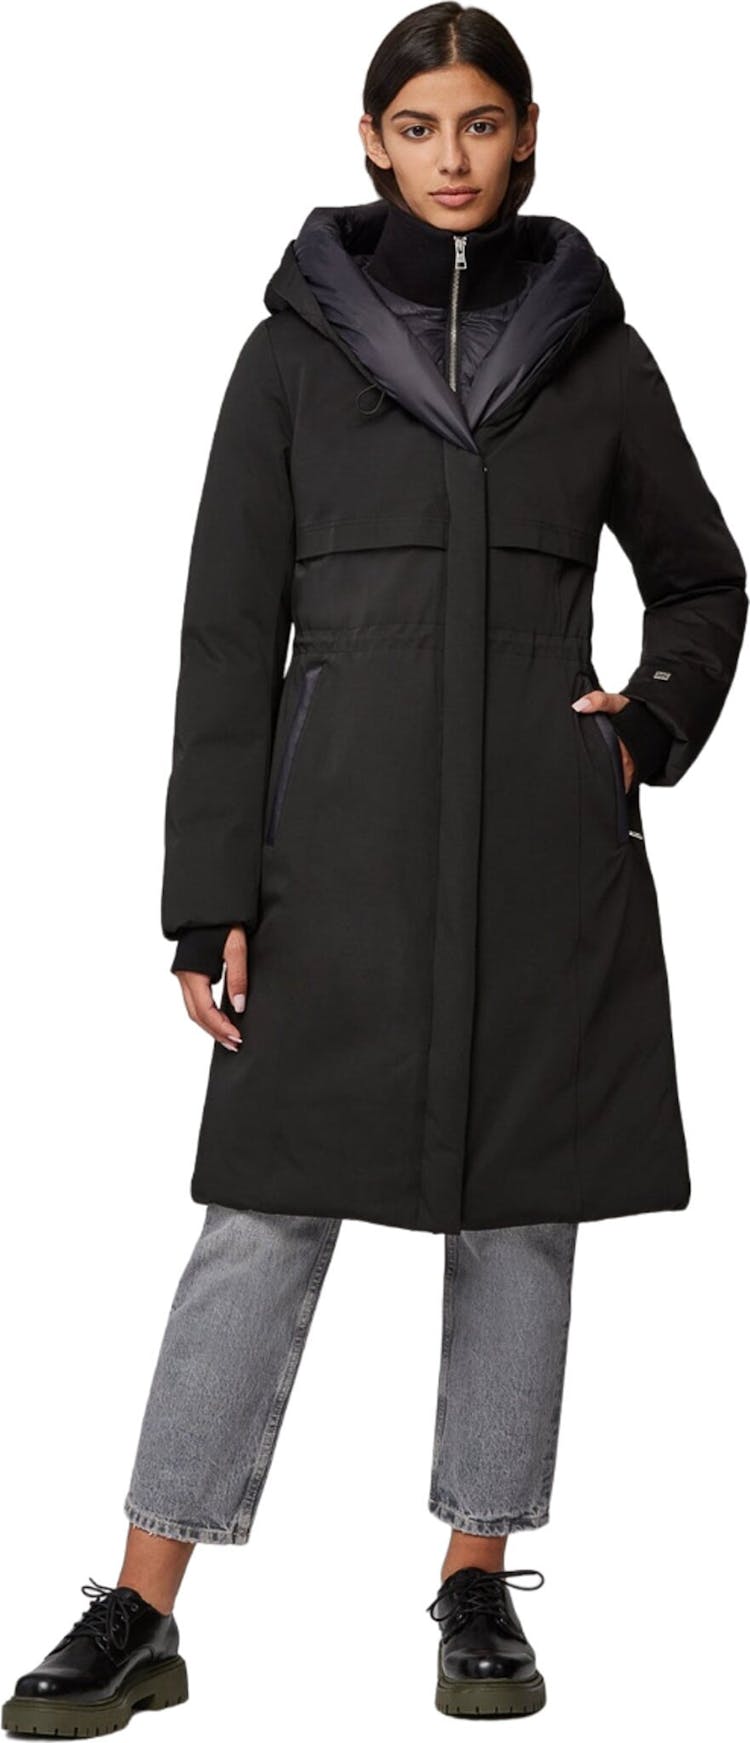 Numéro de l'image de la galerie de produits 1 pour le produit Manteau semi-ajusté en duvet classique avec capuchon Samara-TD - Femme